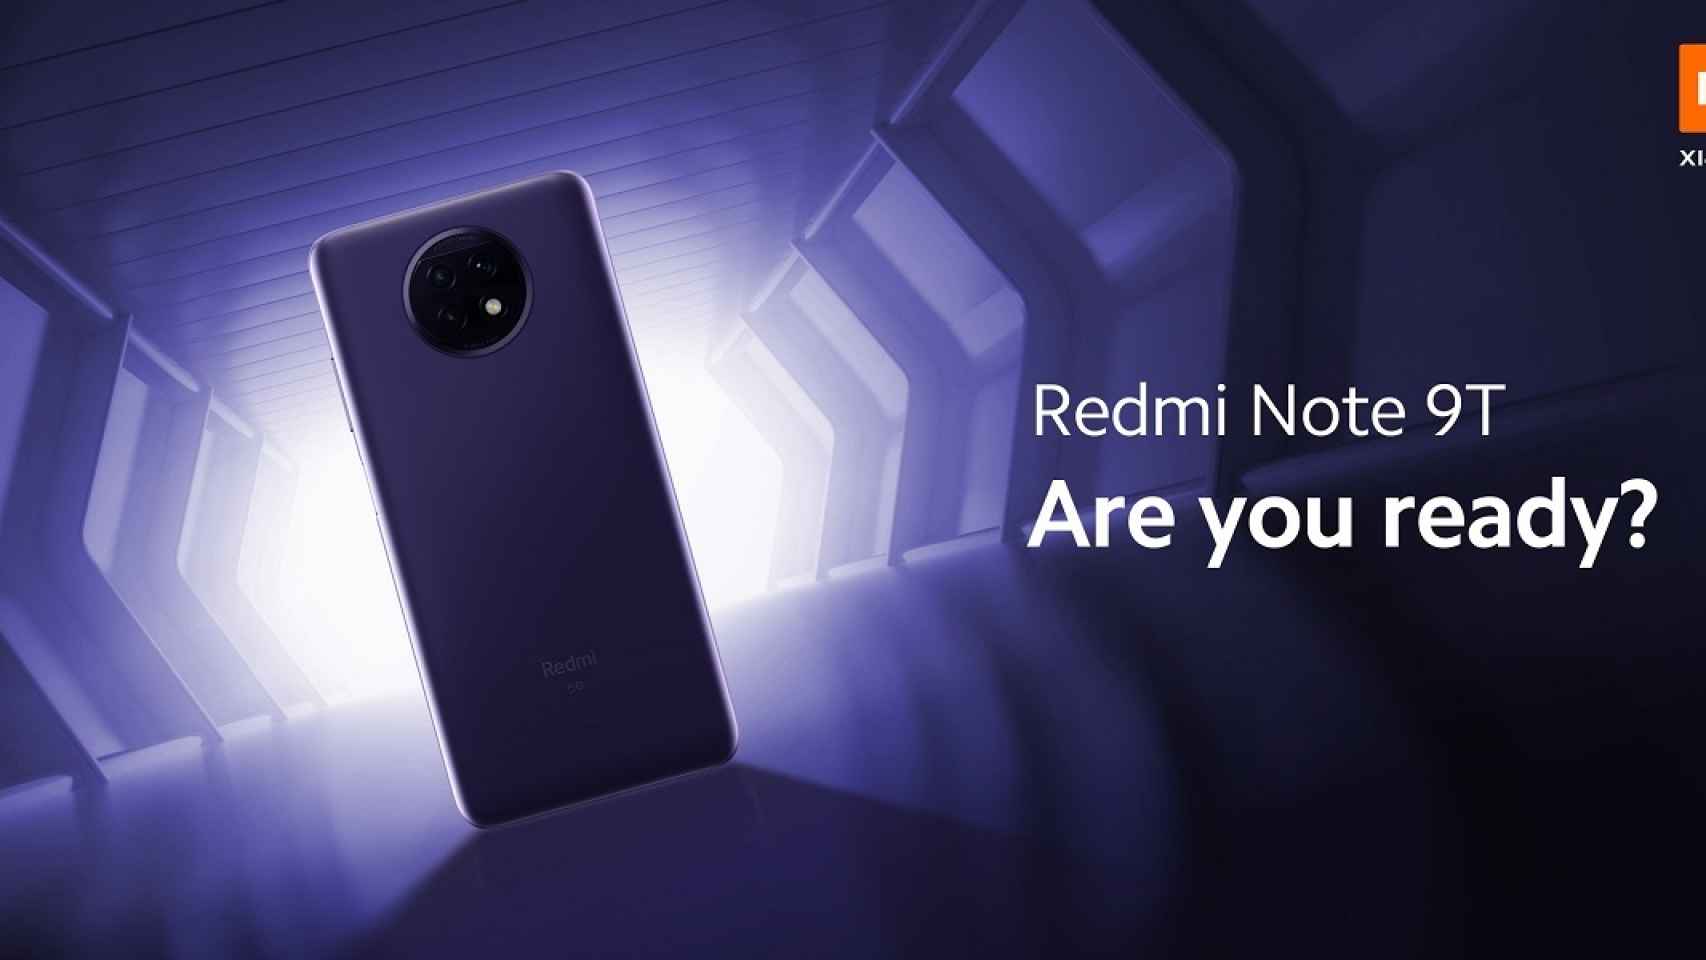 Xiaomi confirma la fecha de presentación del Redmi Note 9T 5G en España